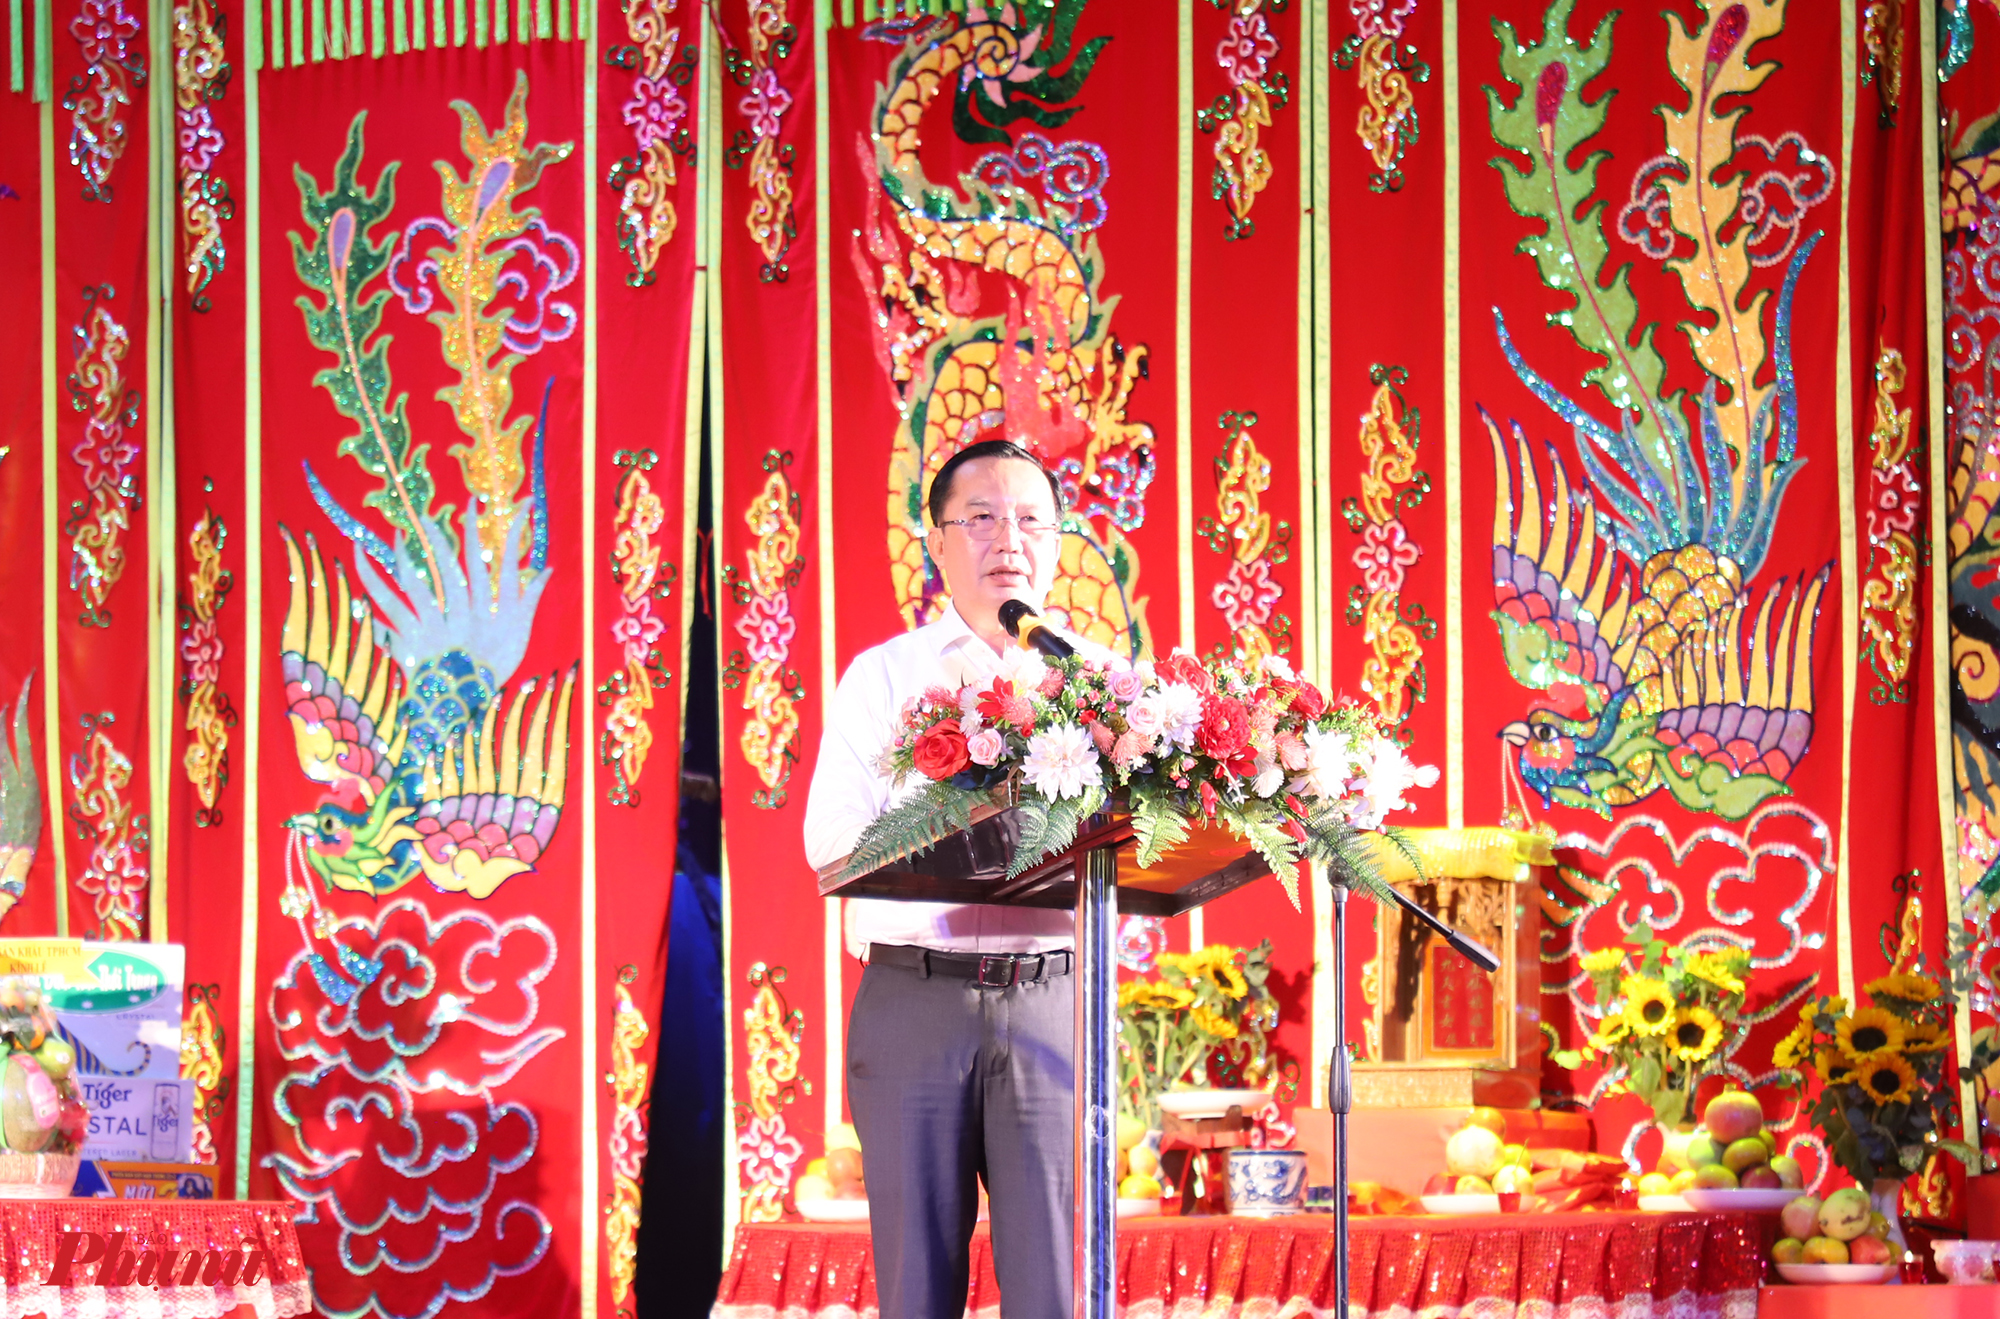 Ông Trần Thế Thuận, Giám đốc Sở Văn hoá - Thể thao TPHCM tham dự lễ cúng Tổ nghề sân khấu tại nhà hát này. Ông điểm lại những ưu thế của nhà hát như xây dựng các vở diễn chất lượng, giữ được cách biểu diễn truyền thống. Đồng thời, nhà hát cũng đang nỗ lực để đào tạo thế hệ trẻ. 